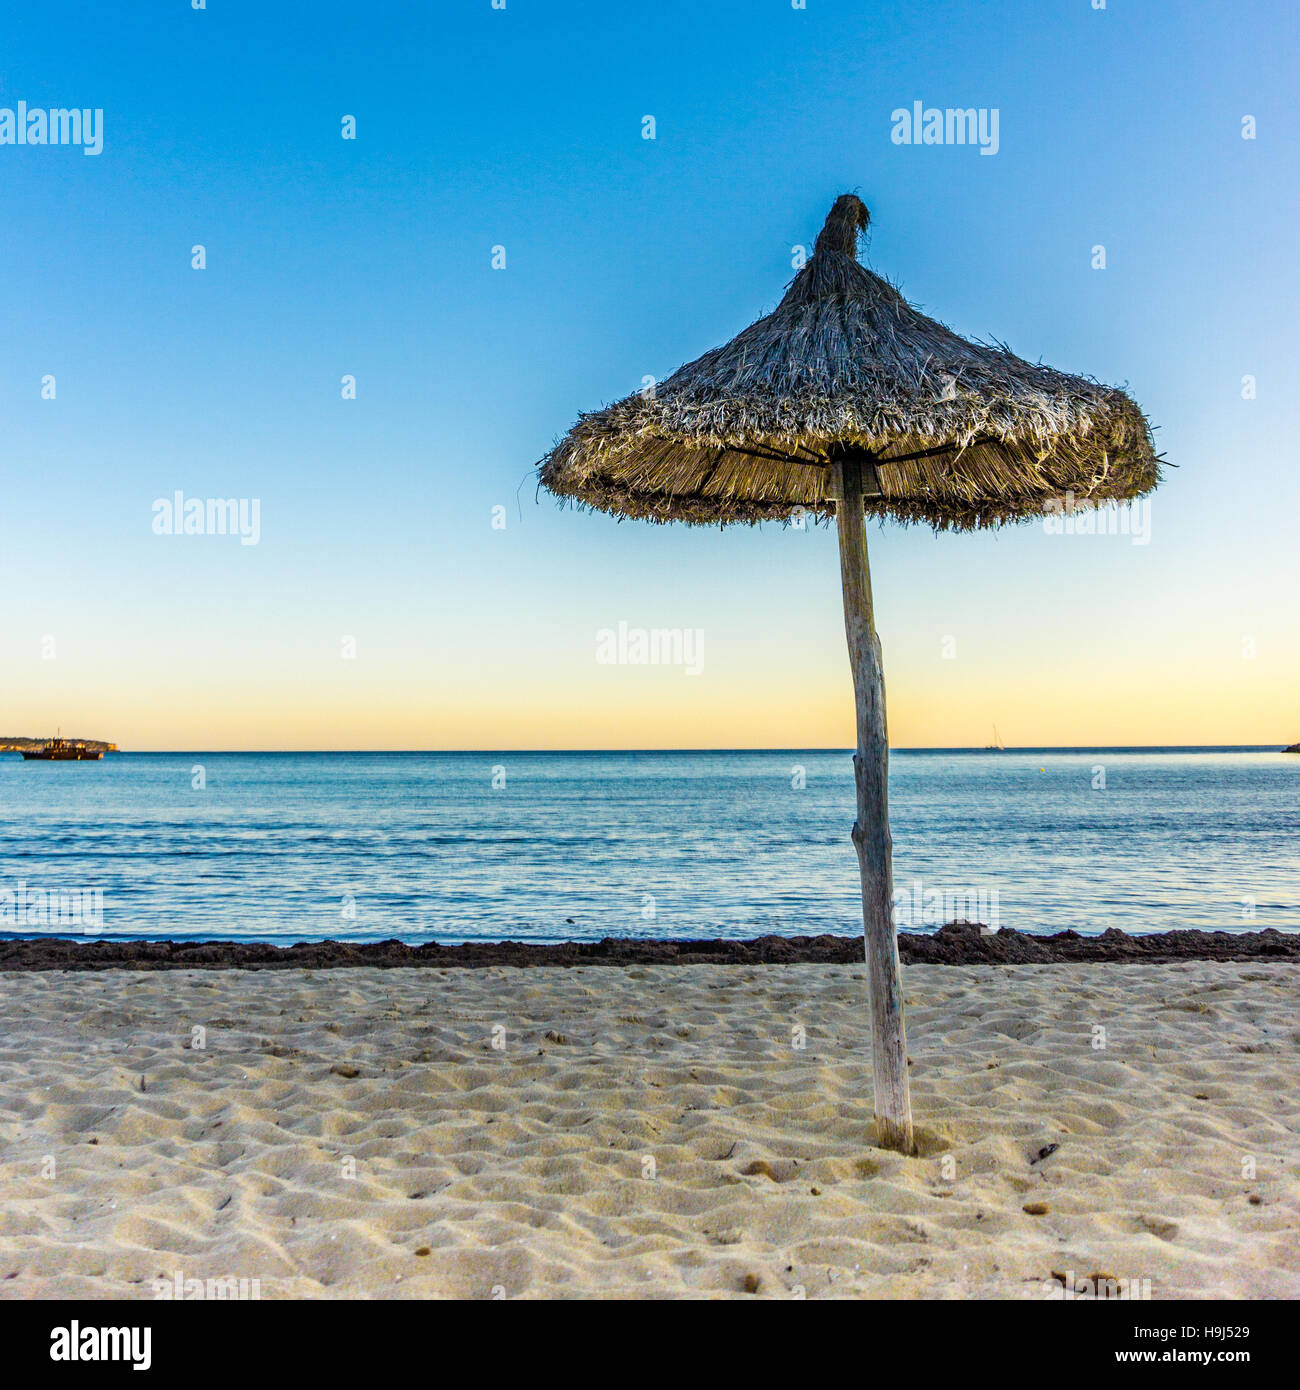 Sun Parasol on the beach at Palma Nova Majorca Stock Photo